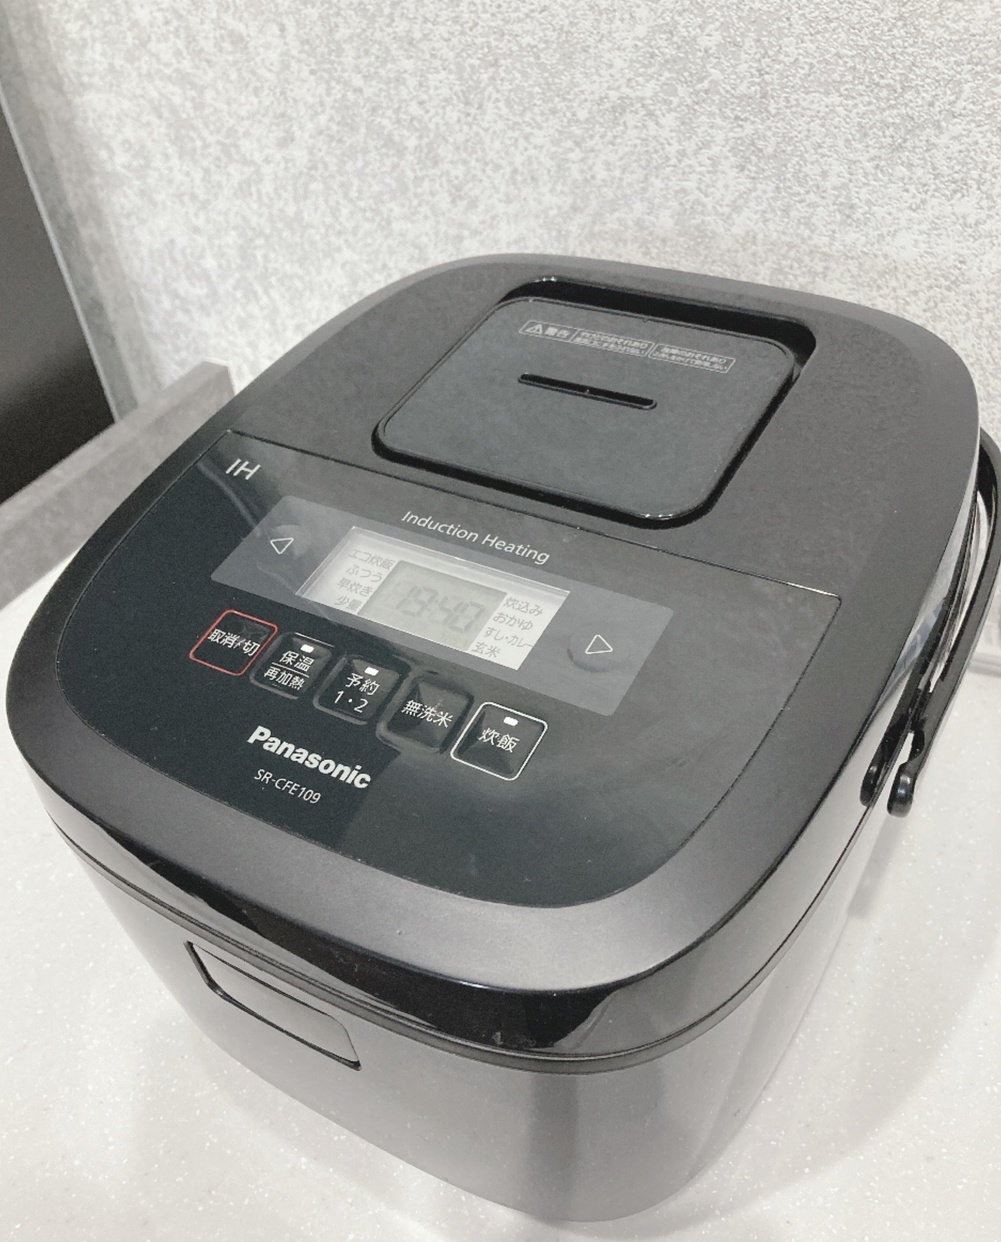 Panasonic(パナソニック) IHジャー炊飯器  SR-CFE109の良い点・メリットに関するカアナ☆さんの口コミ画像1